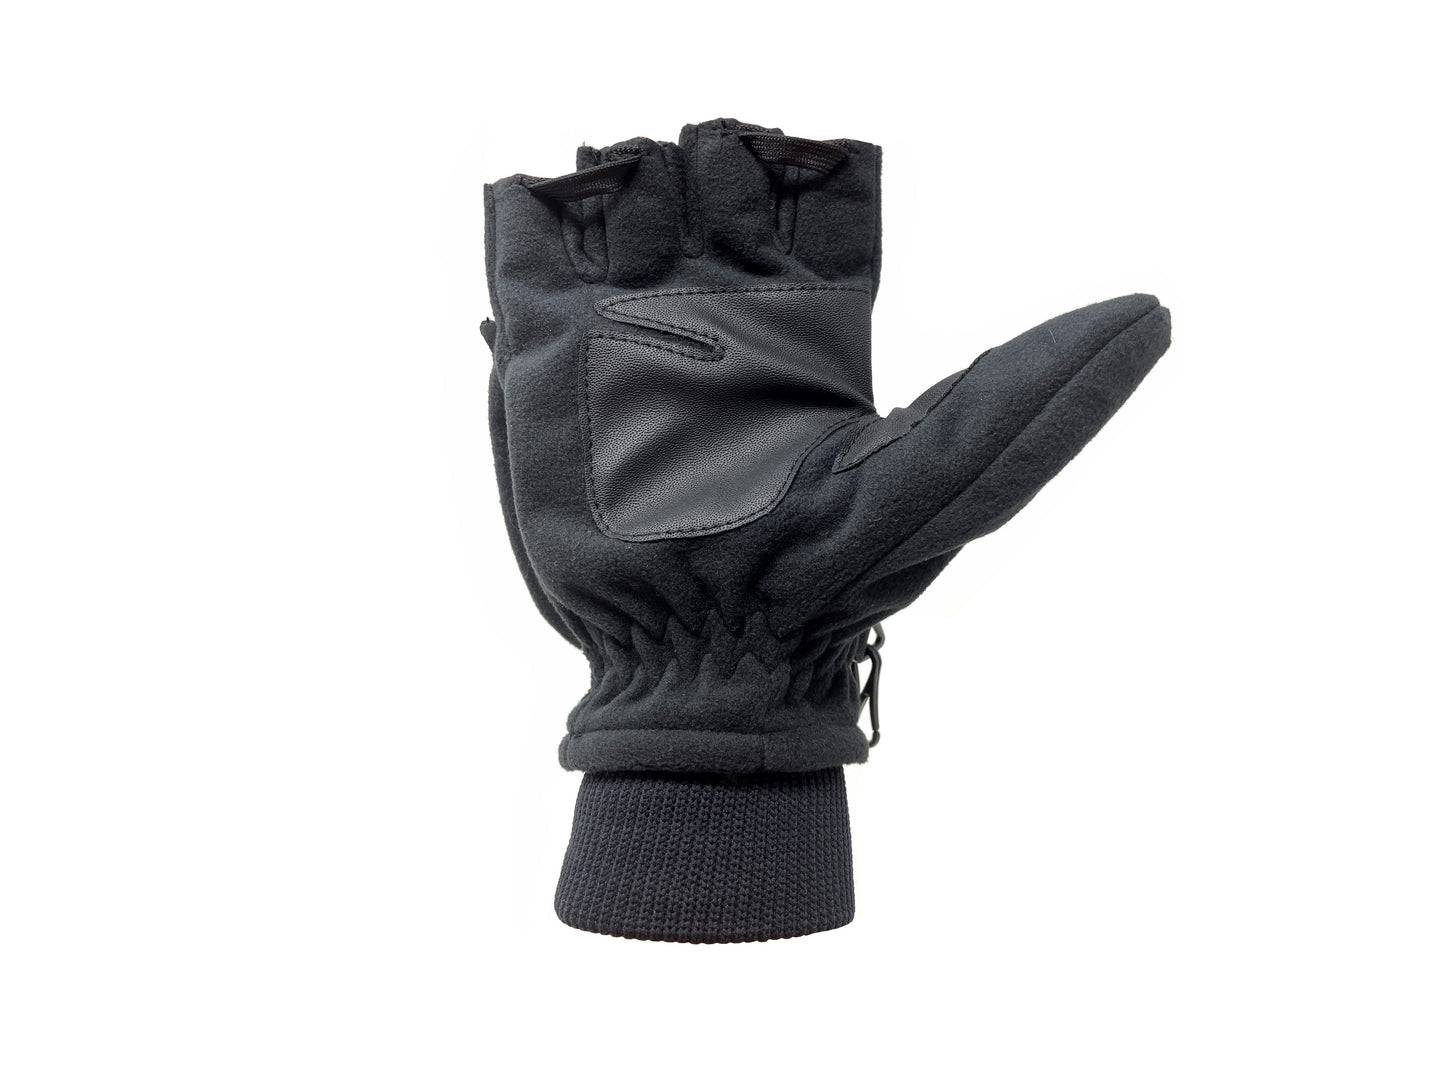 NBG-02 gants de ski moufle retractable, Noir